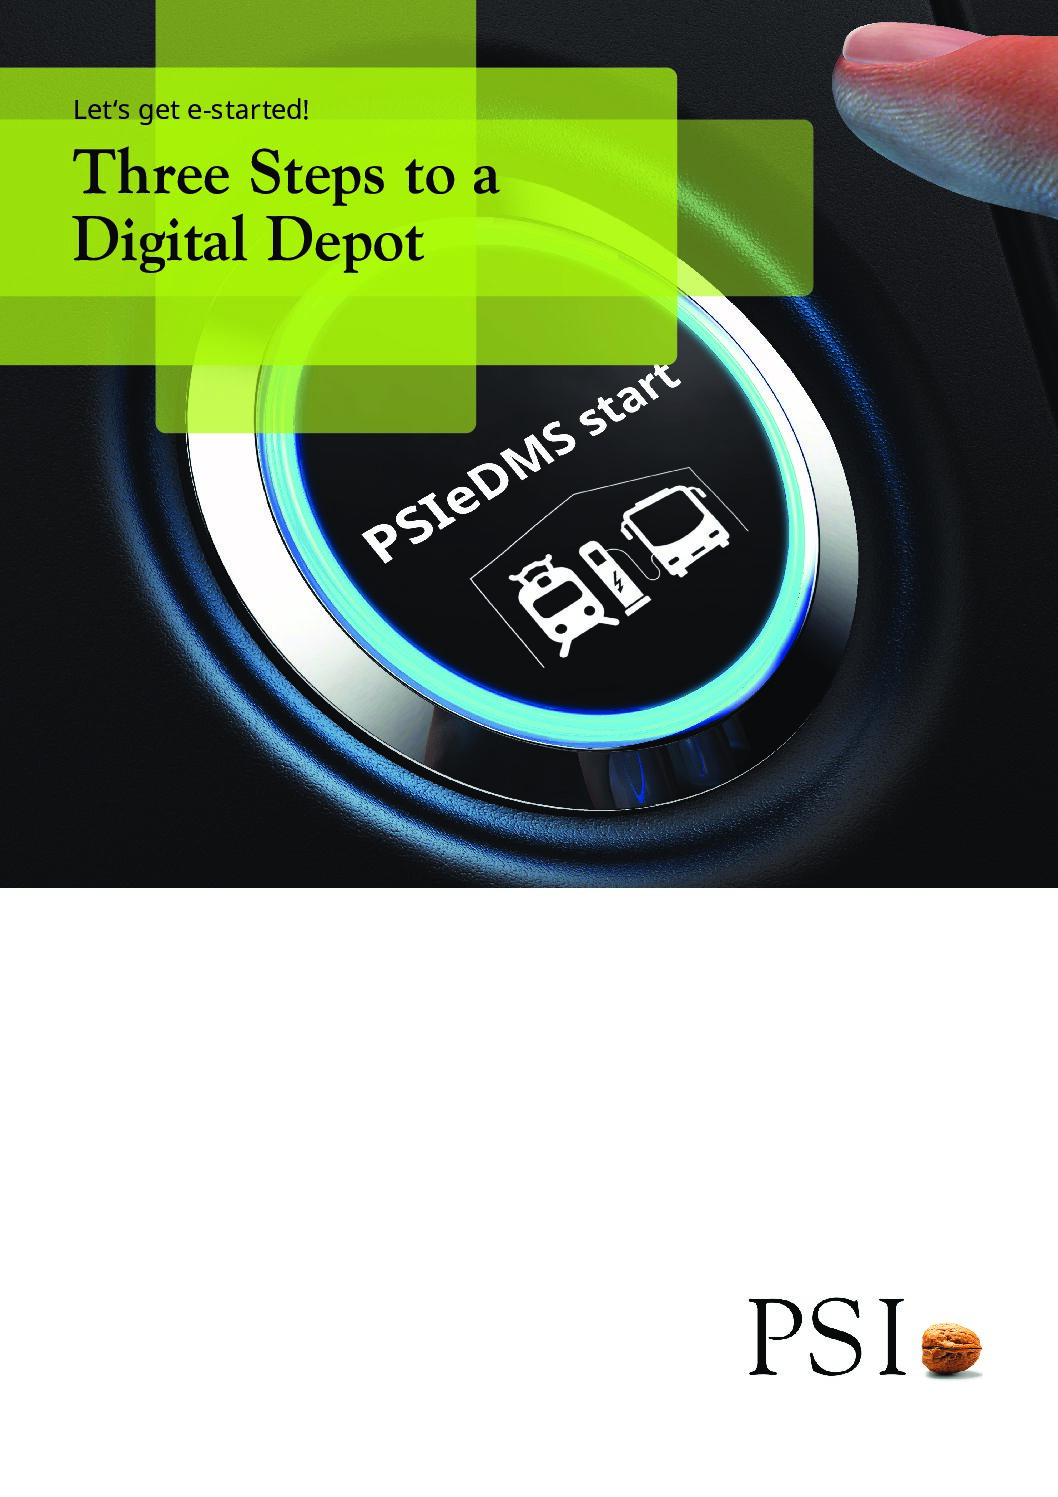 PSI Transcom GmbH: Three Steps to a Digital Depot